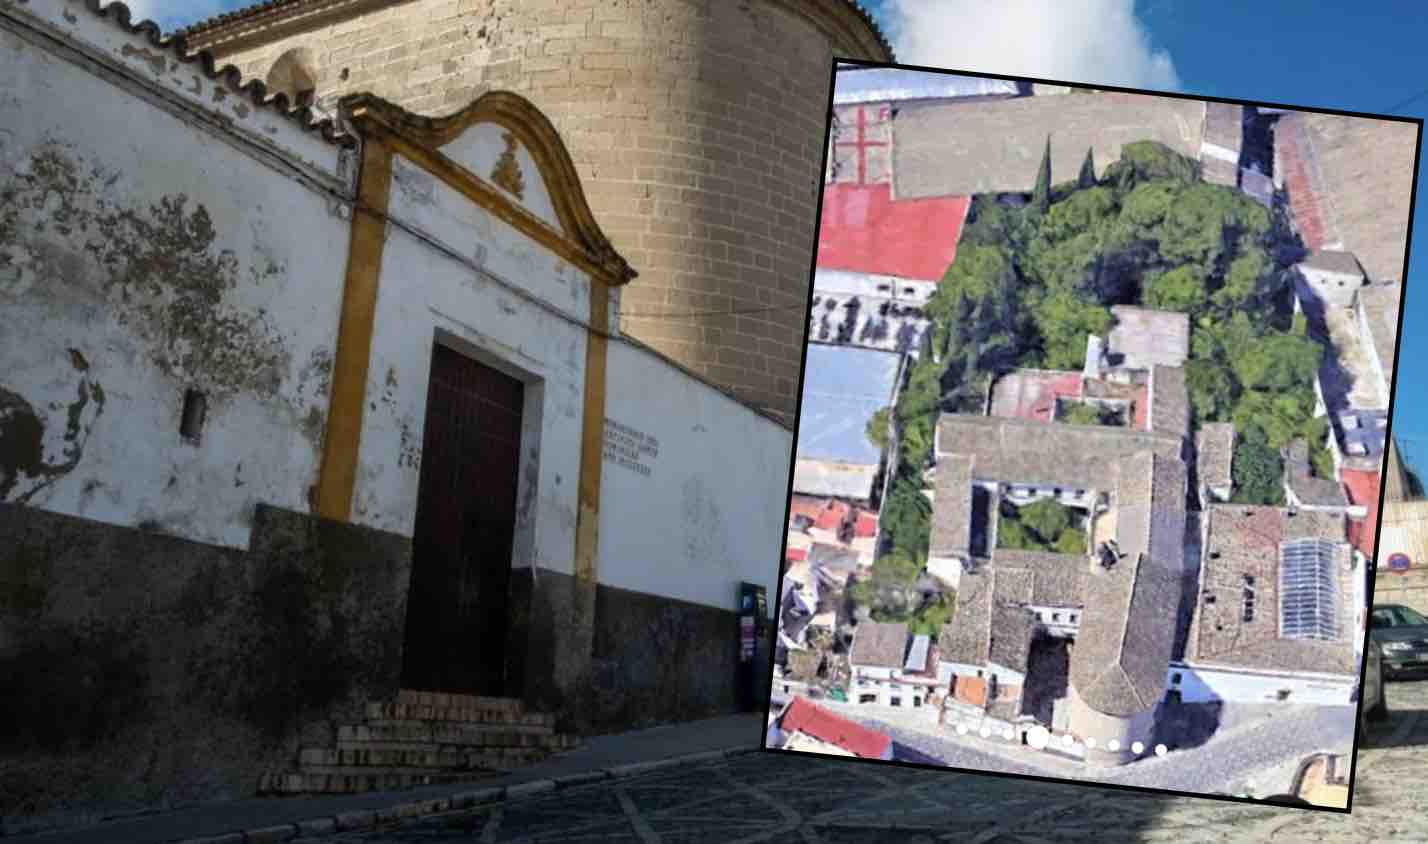 Convento del Espíritu Santo junto con una imagen aérea del complejo publicada en 'Mil Anuncios'.